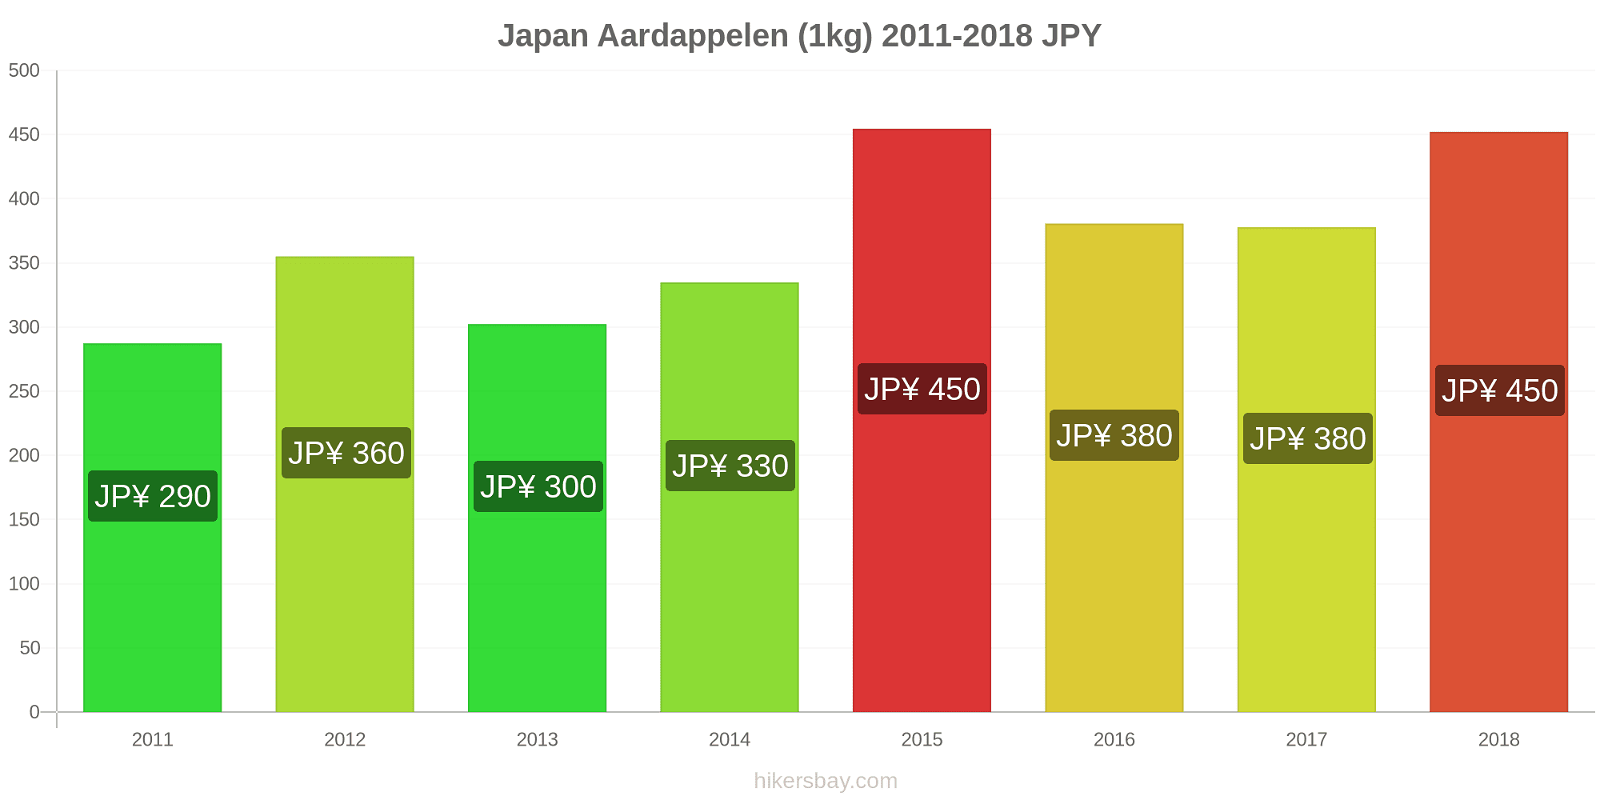 Japan prijswijzigingen Aardappelen (1kg) hikersbay.com